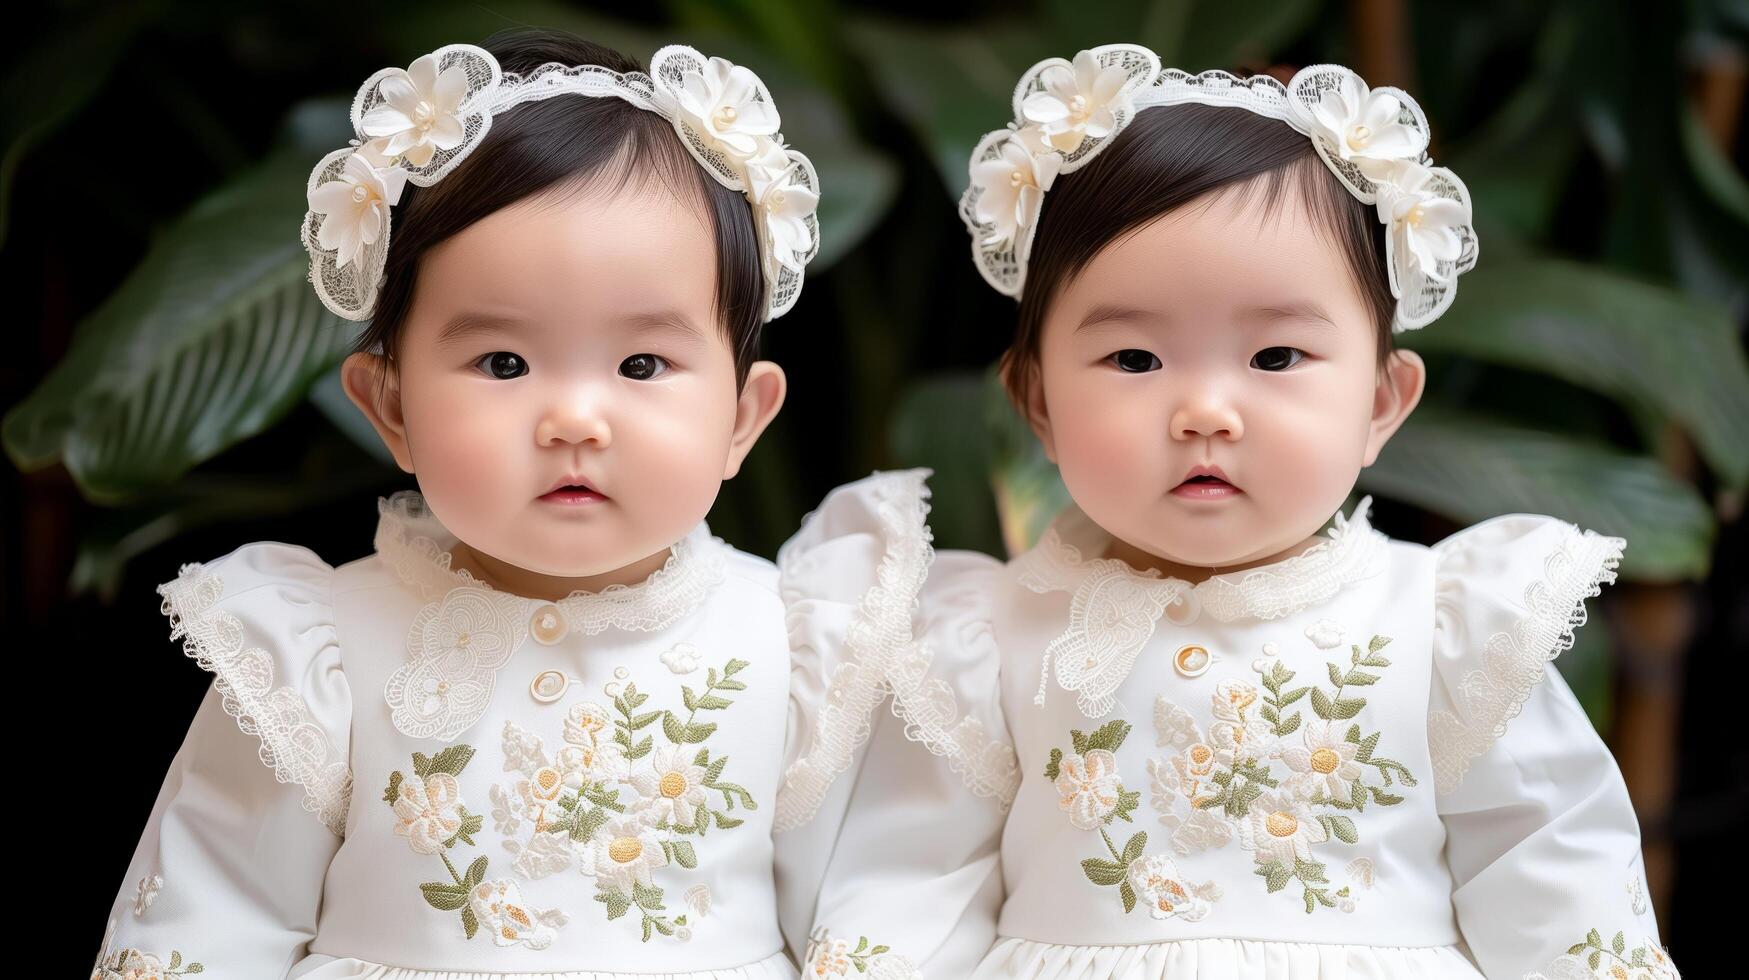 gemelo niños pequeños en pareo floral vestidos y diademas foto